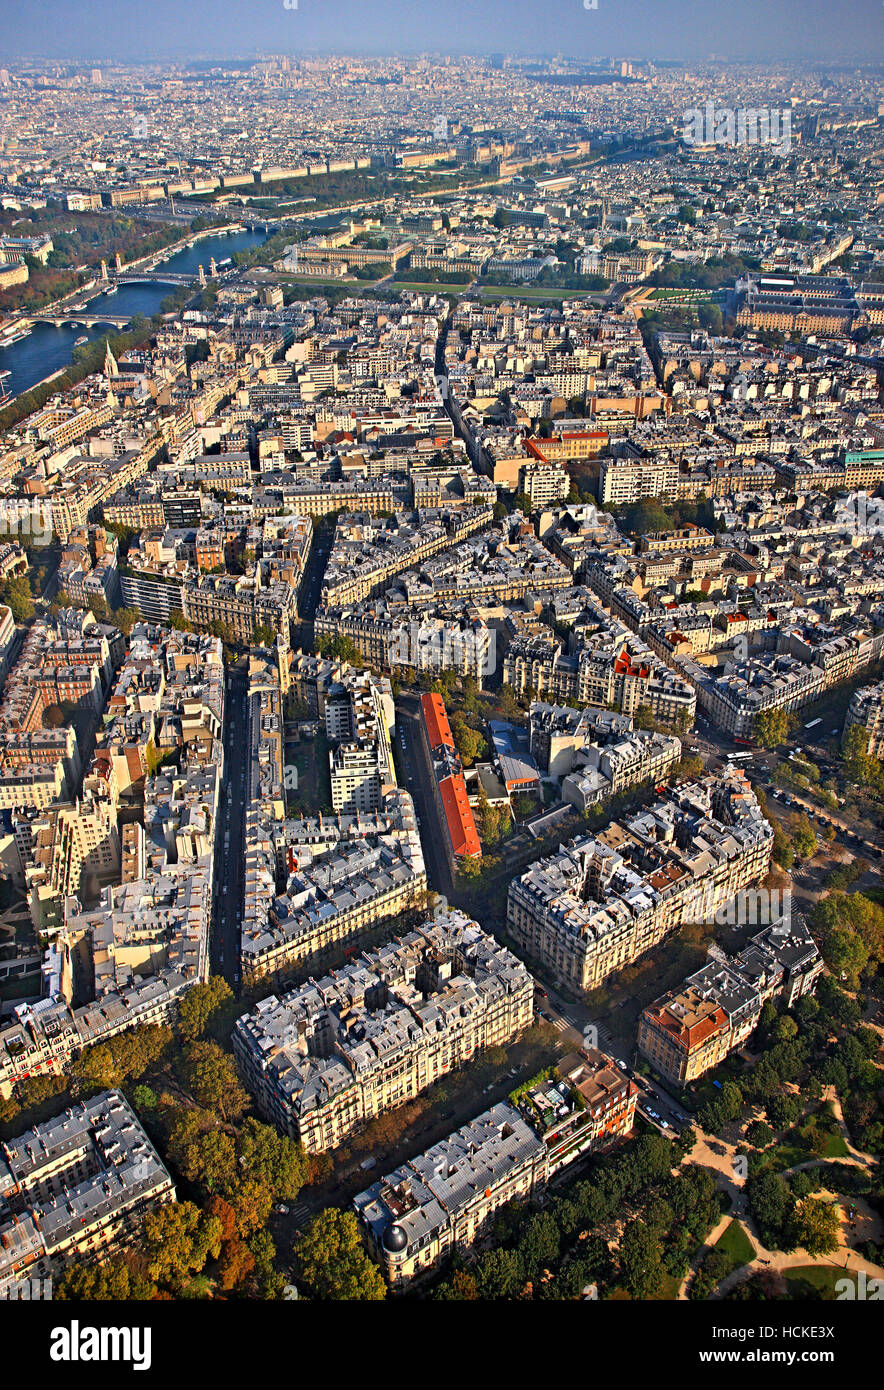 Vista del barrio típico en la orilla derecha del río Sena desde el tope de la torre Eiffel, en París, Francia. Foto de stock